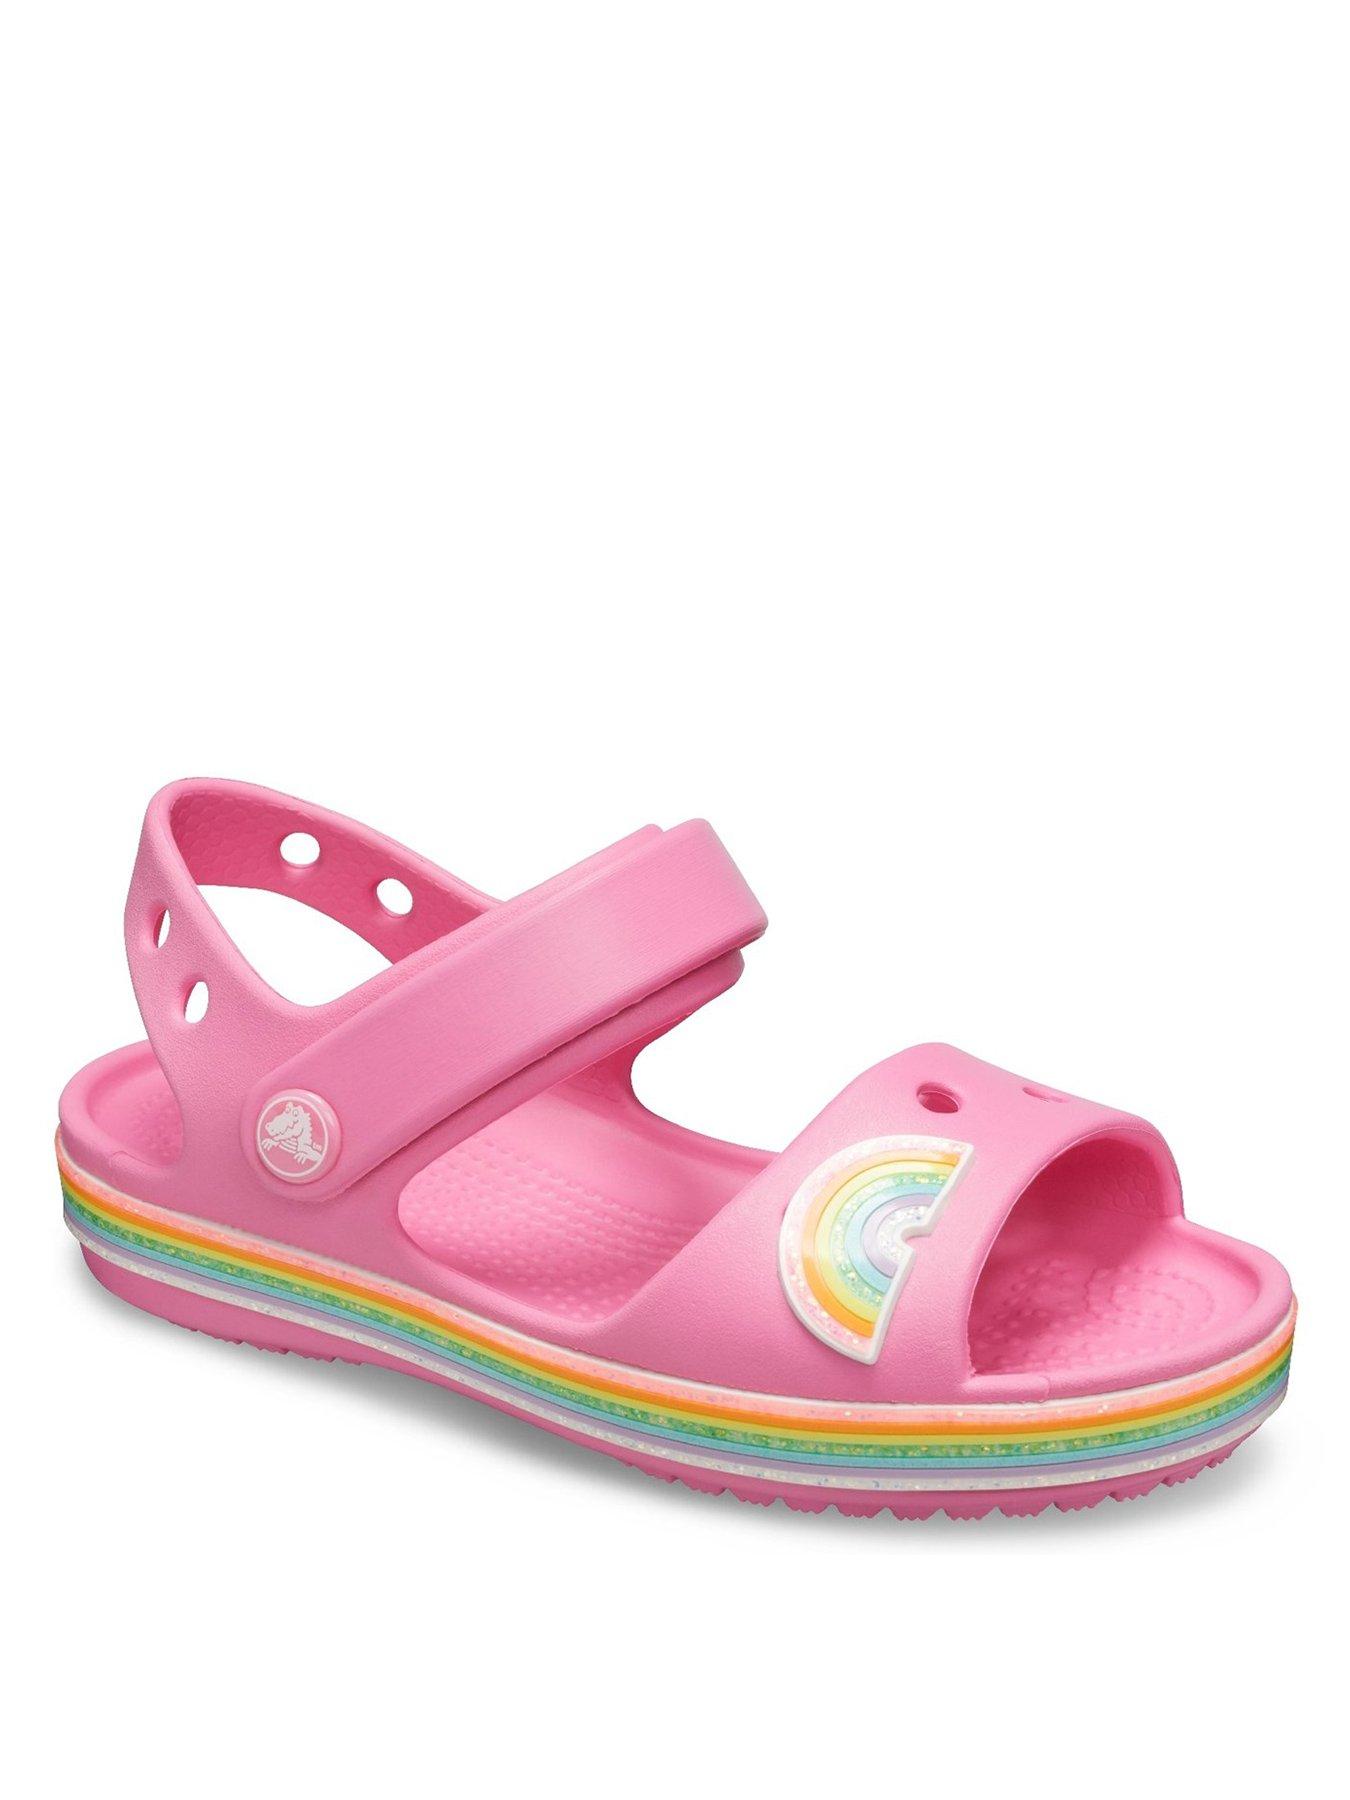 crocs baby girl sandals